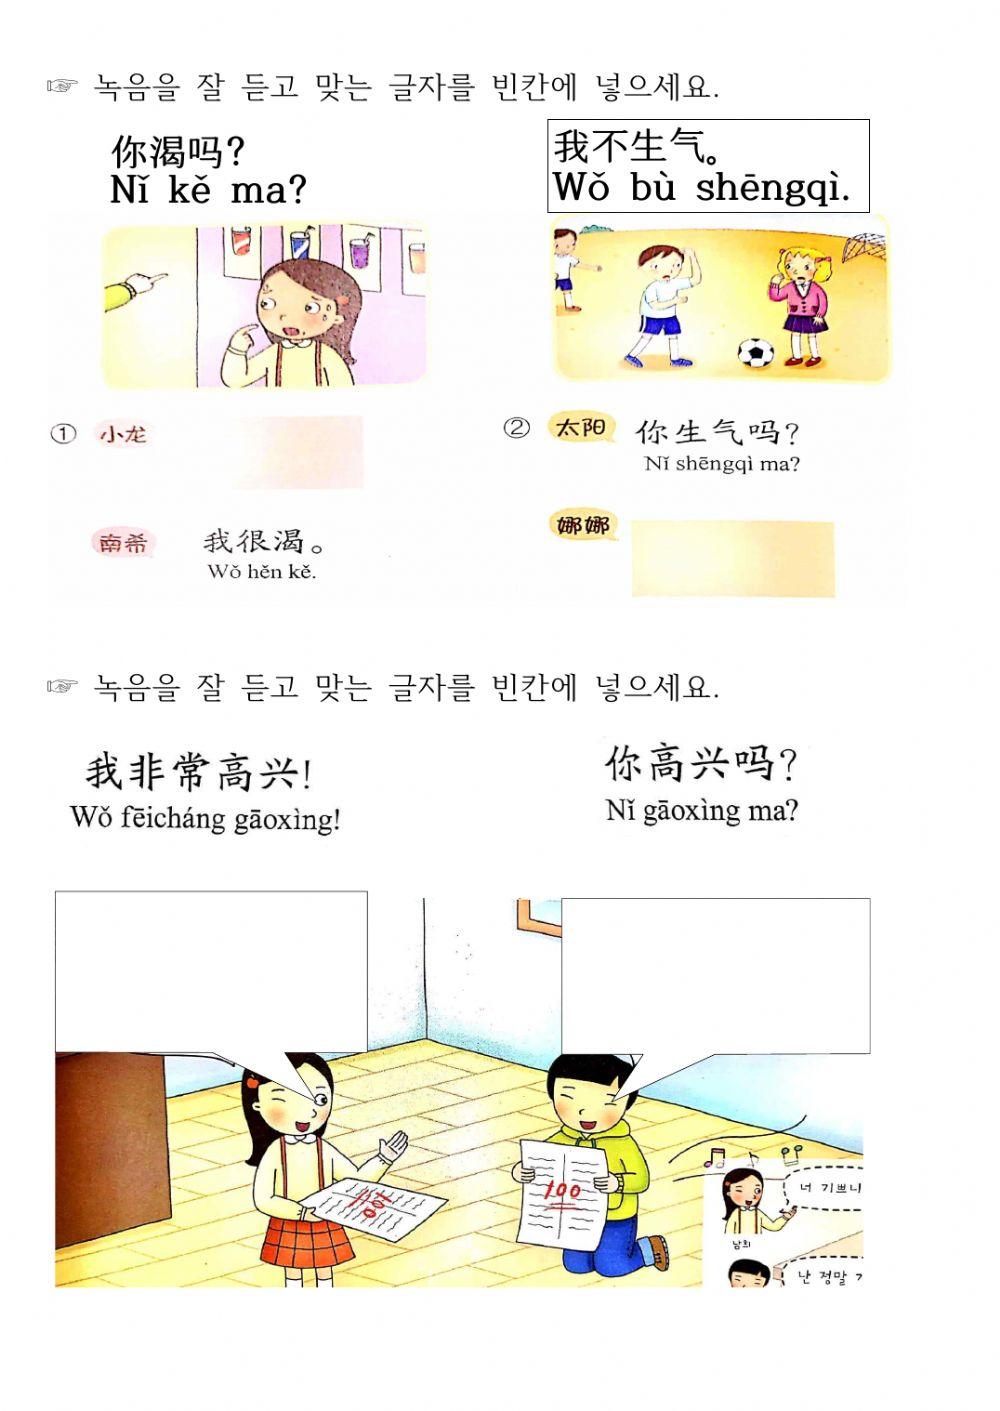 Jrc junir book 2-4 (Korean- Chinese)